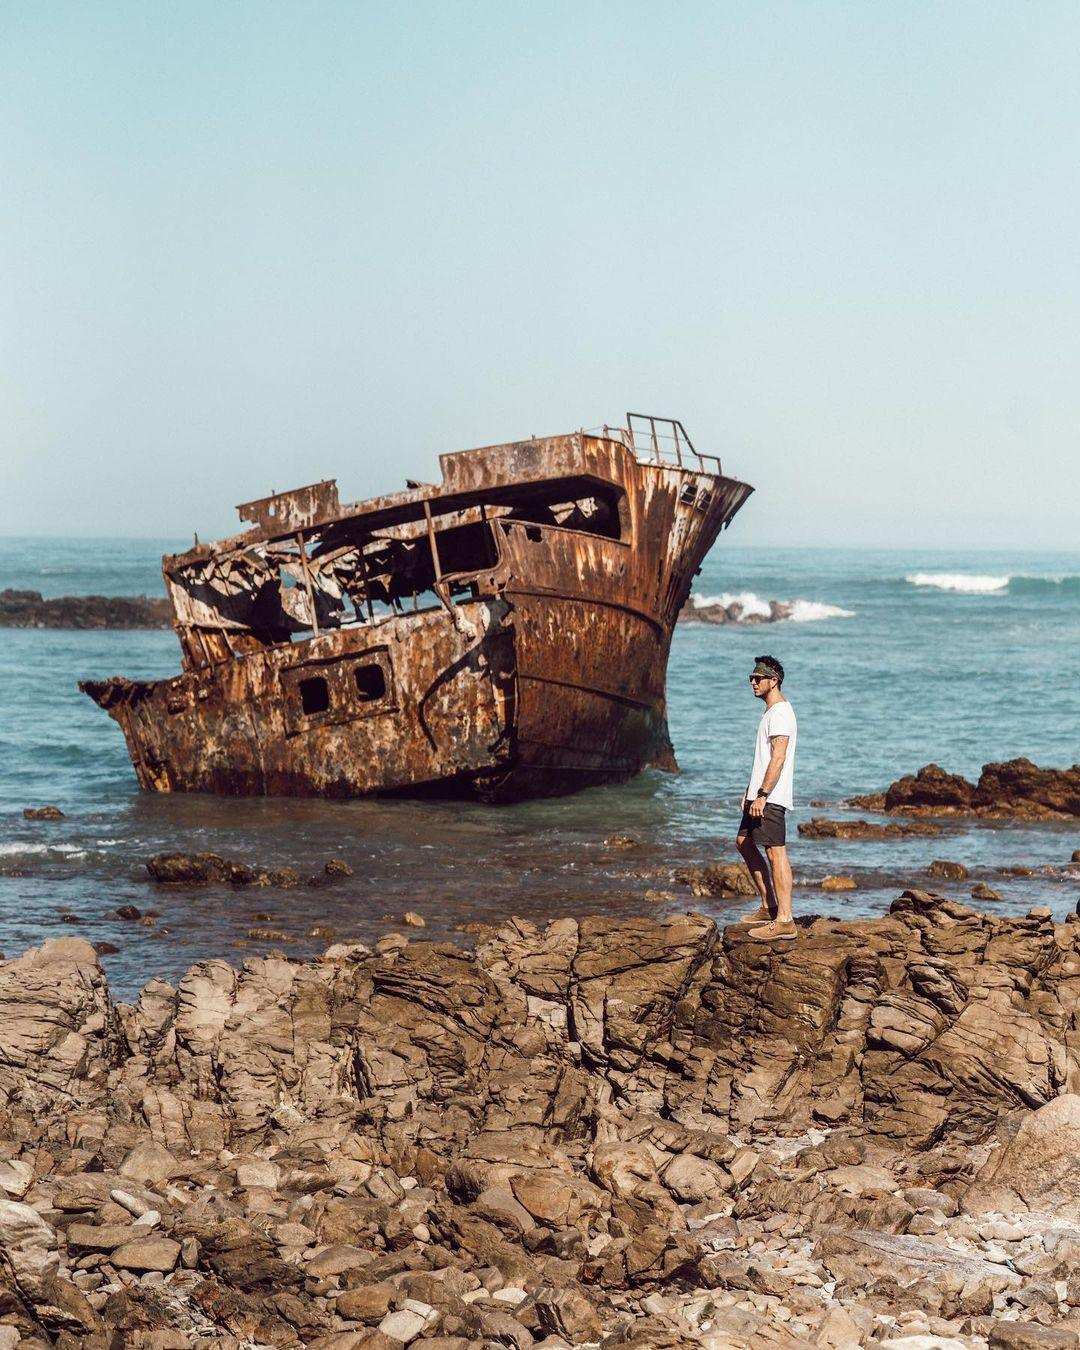 Marlin Manor Shipwreck Attraction